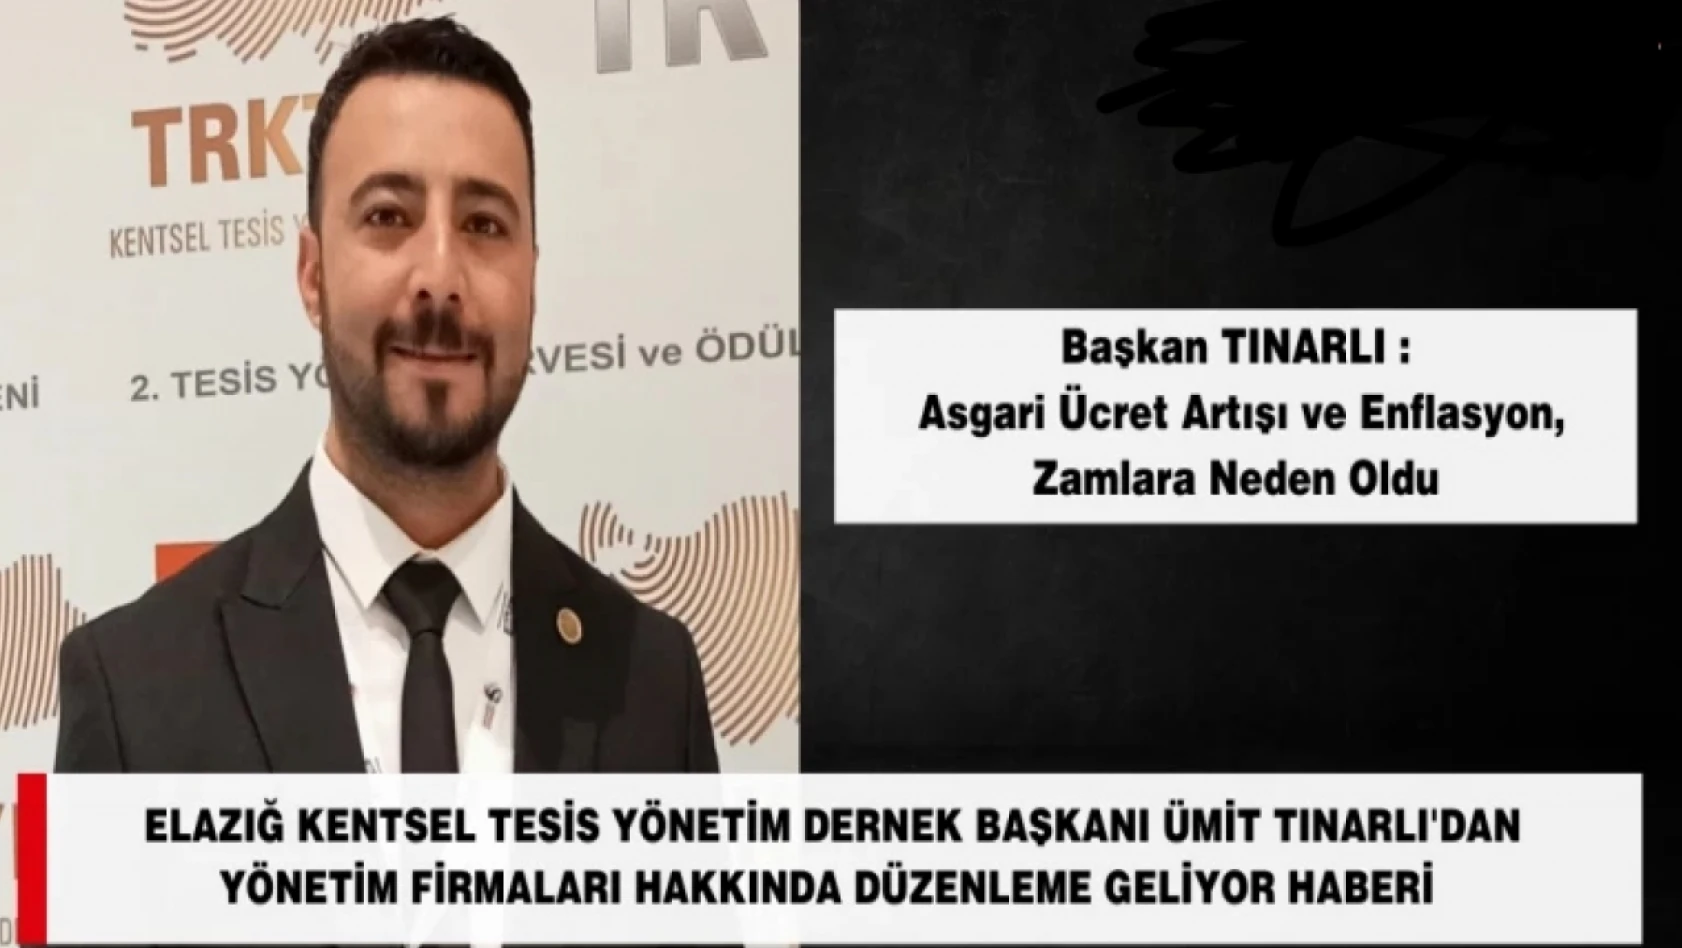 Elazığ Kentsel Tesis Yönetim Kurulu Başkanı Ümit Tınarlı: Yönetim Firmalarına Düzenleme Geliyor